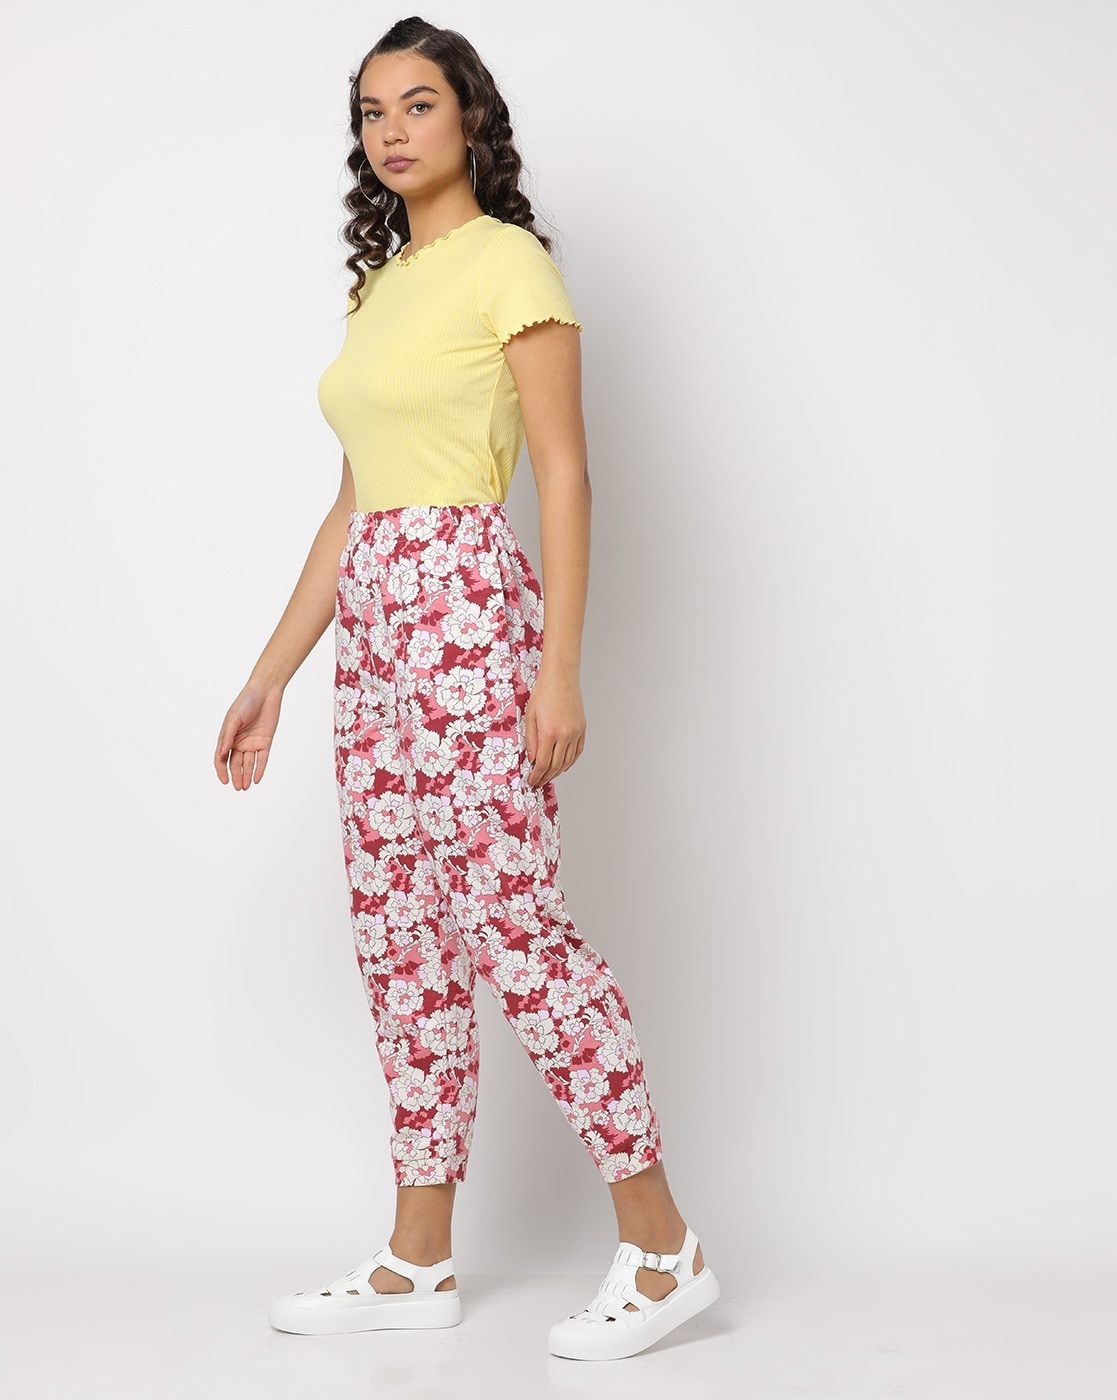 floral pants outfit ideas